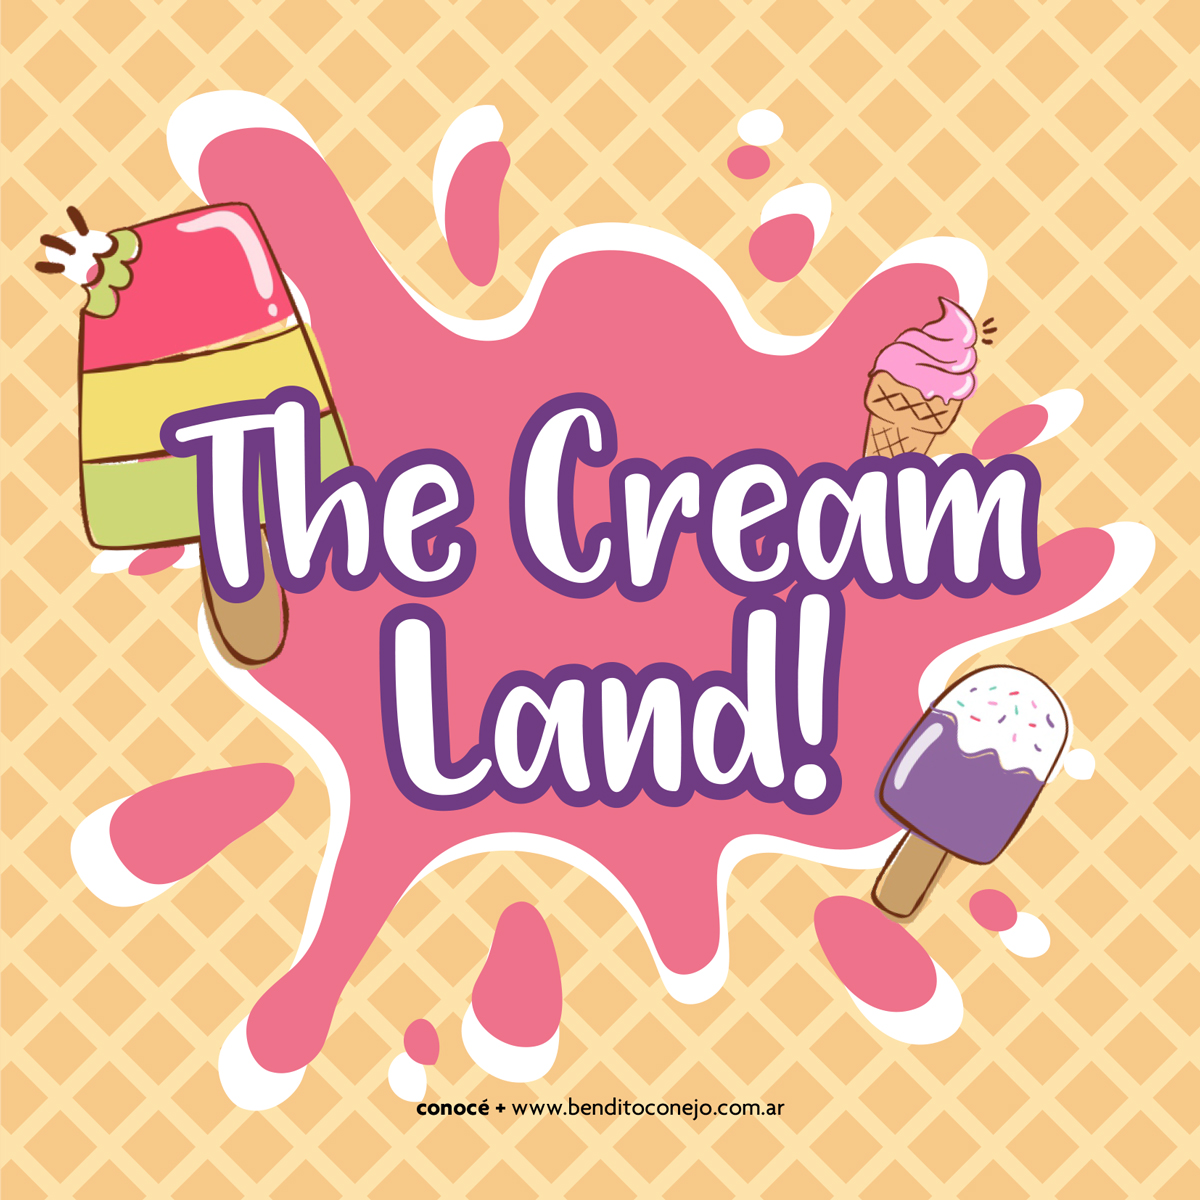 Diseño de producto y marca de producto juego de mesa The Cream Land! para Bendito Conejo by UMM ideas SA